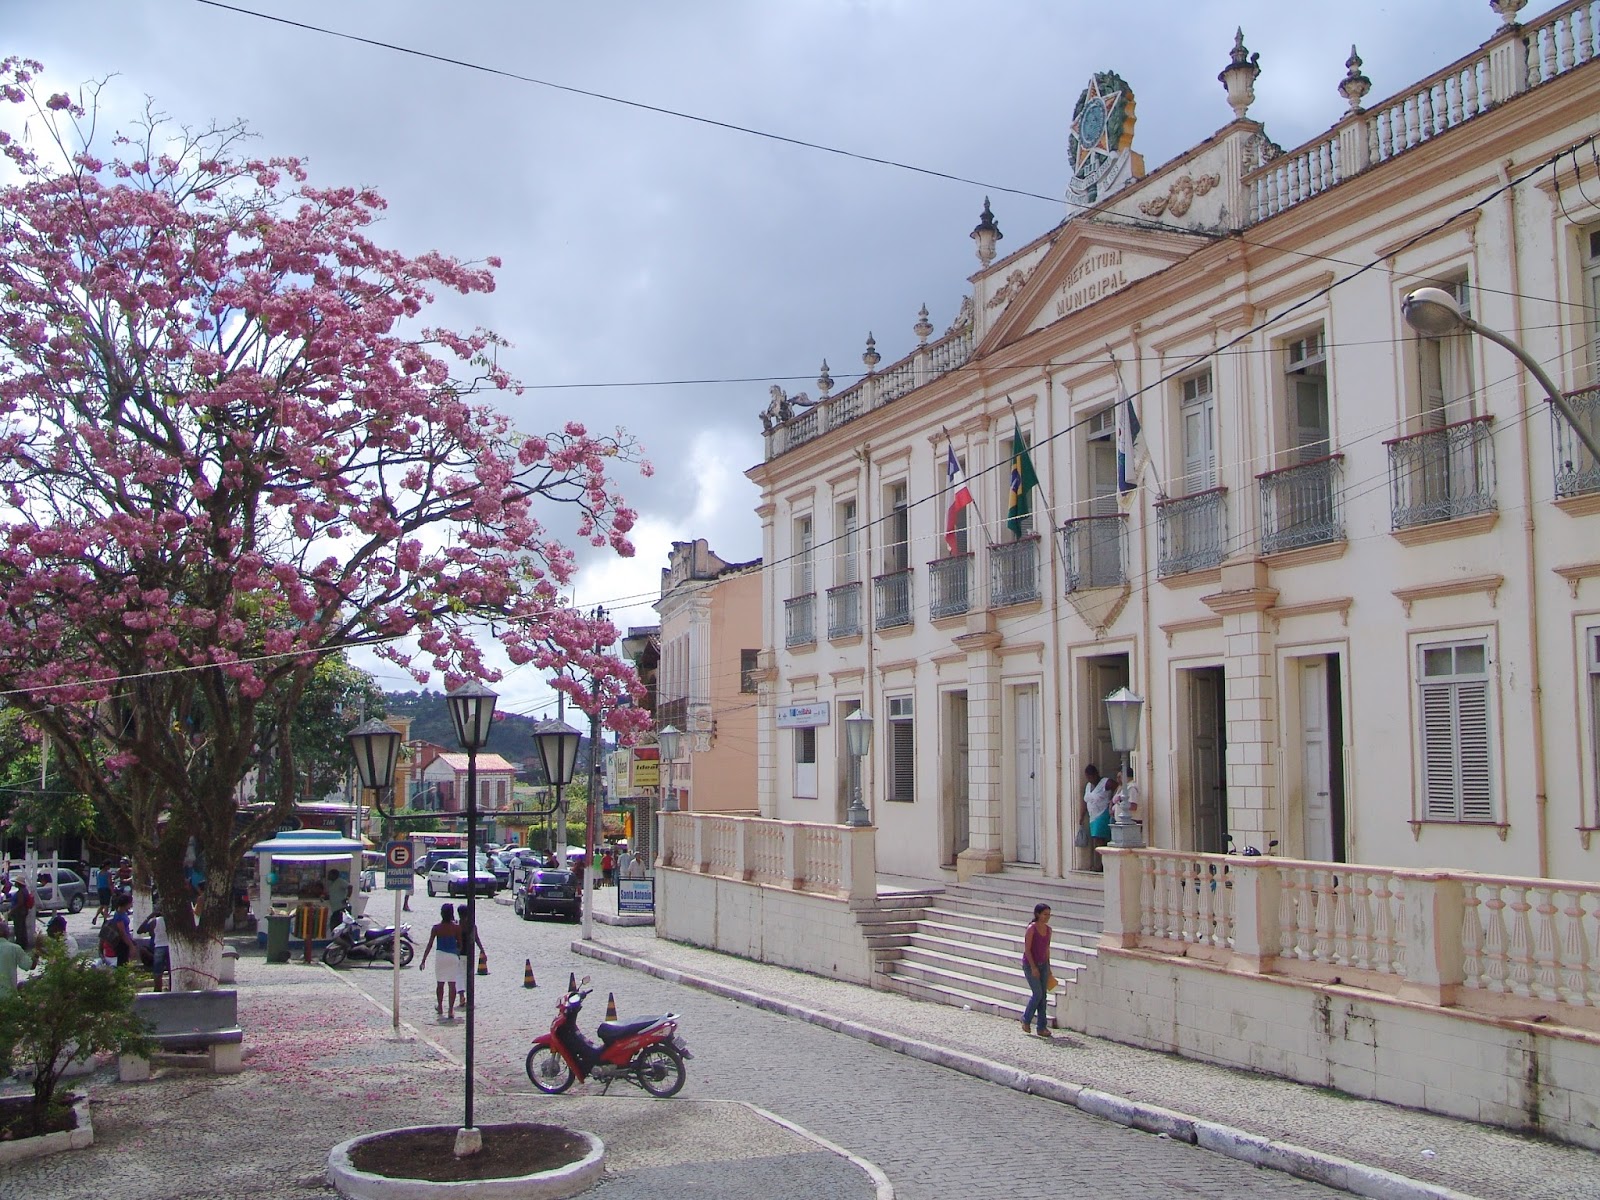 Foto da Câmara Municipal de Nazaré